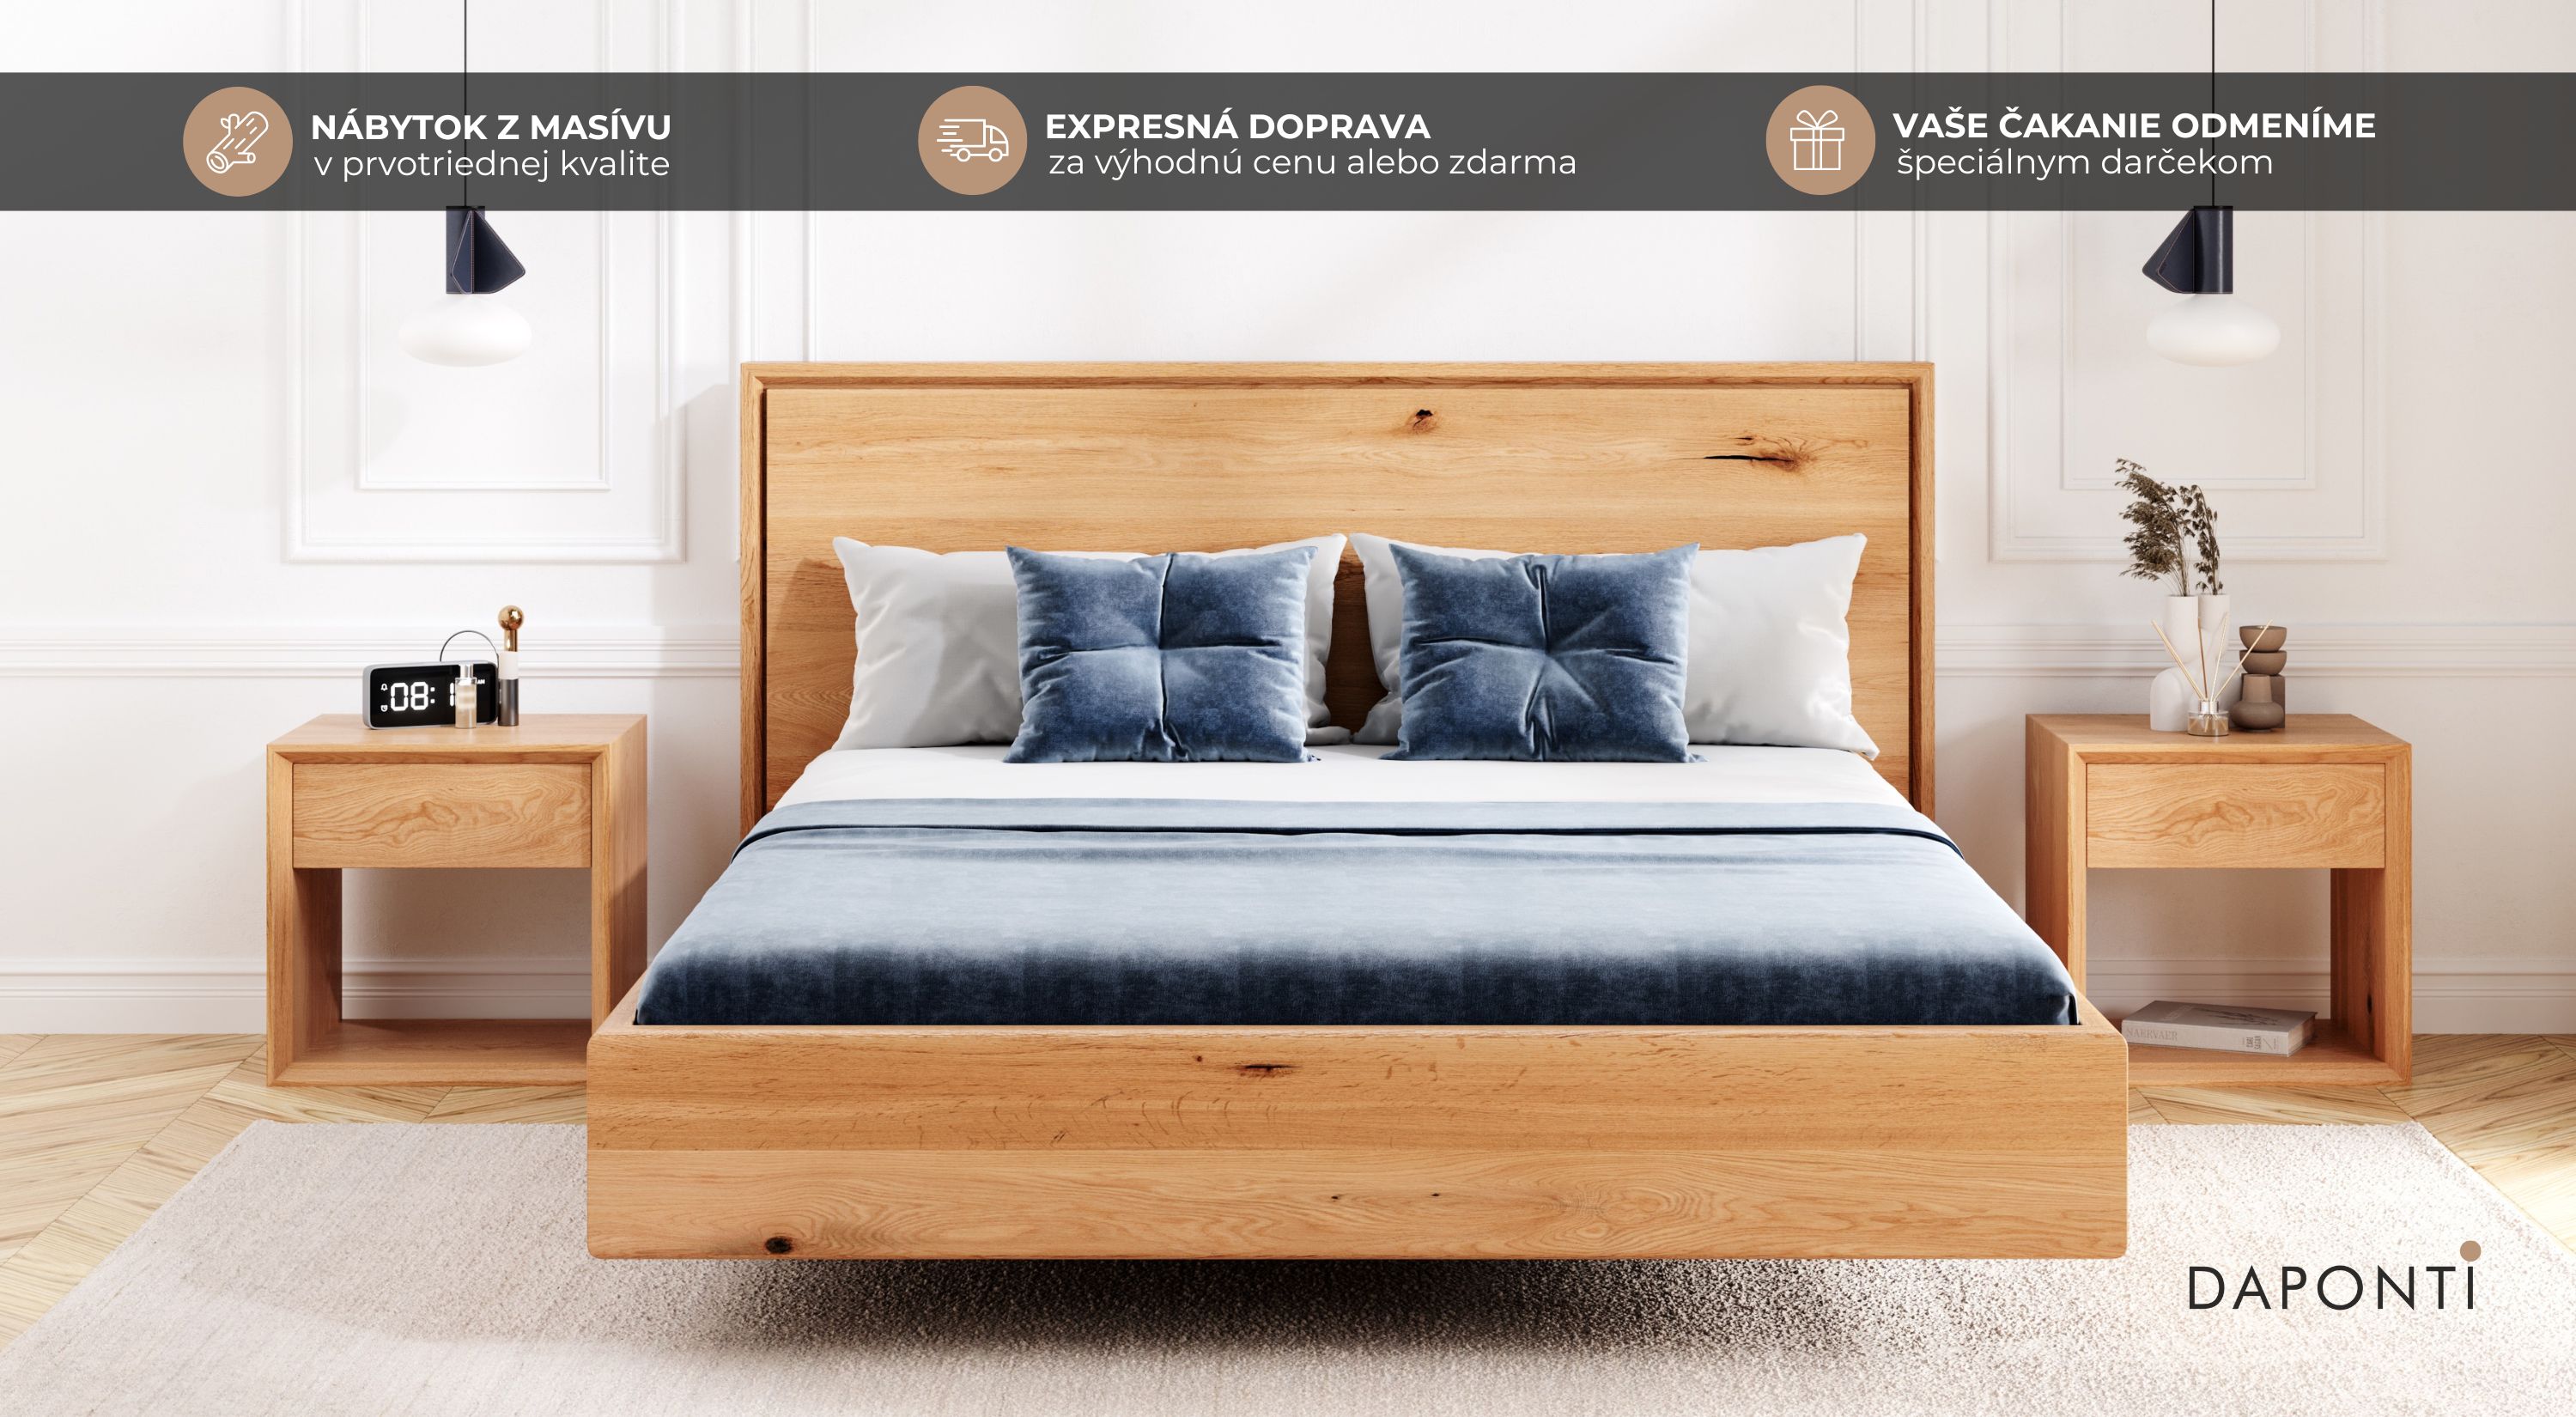 Levitujúca manželská posteľ z masívneho dubového dreva, vedľa postele sa nachádzajú drevené nočné stolíky